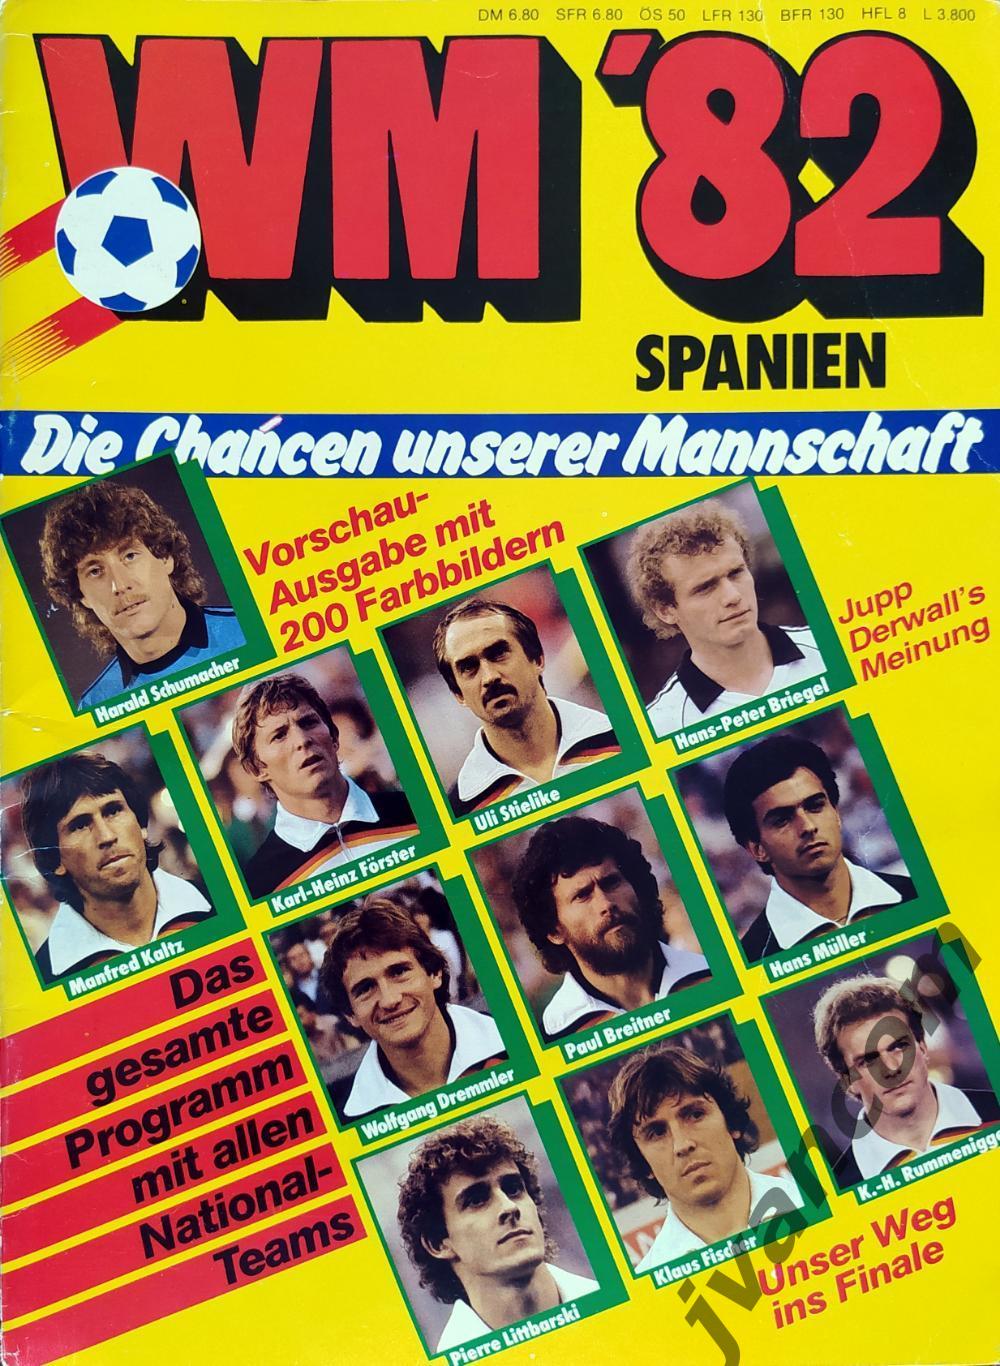 WM*82 Spanien / Чемпионат Мира по футболу*82 в Испании. Представление команд.